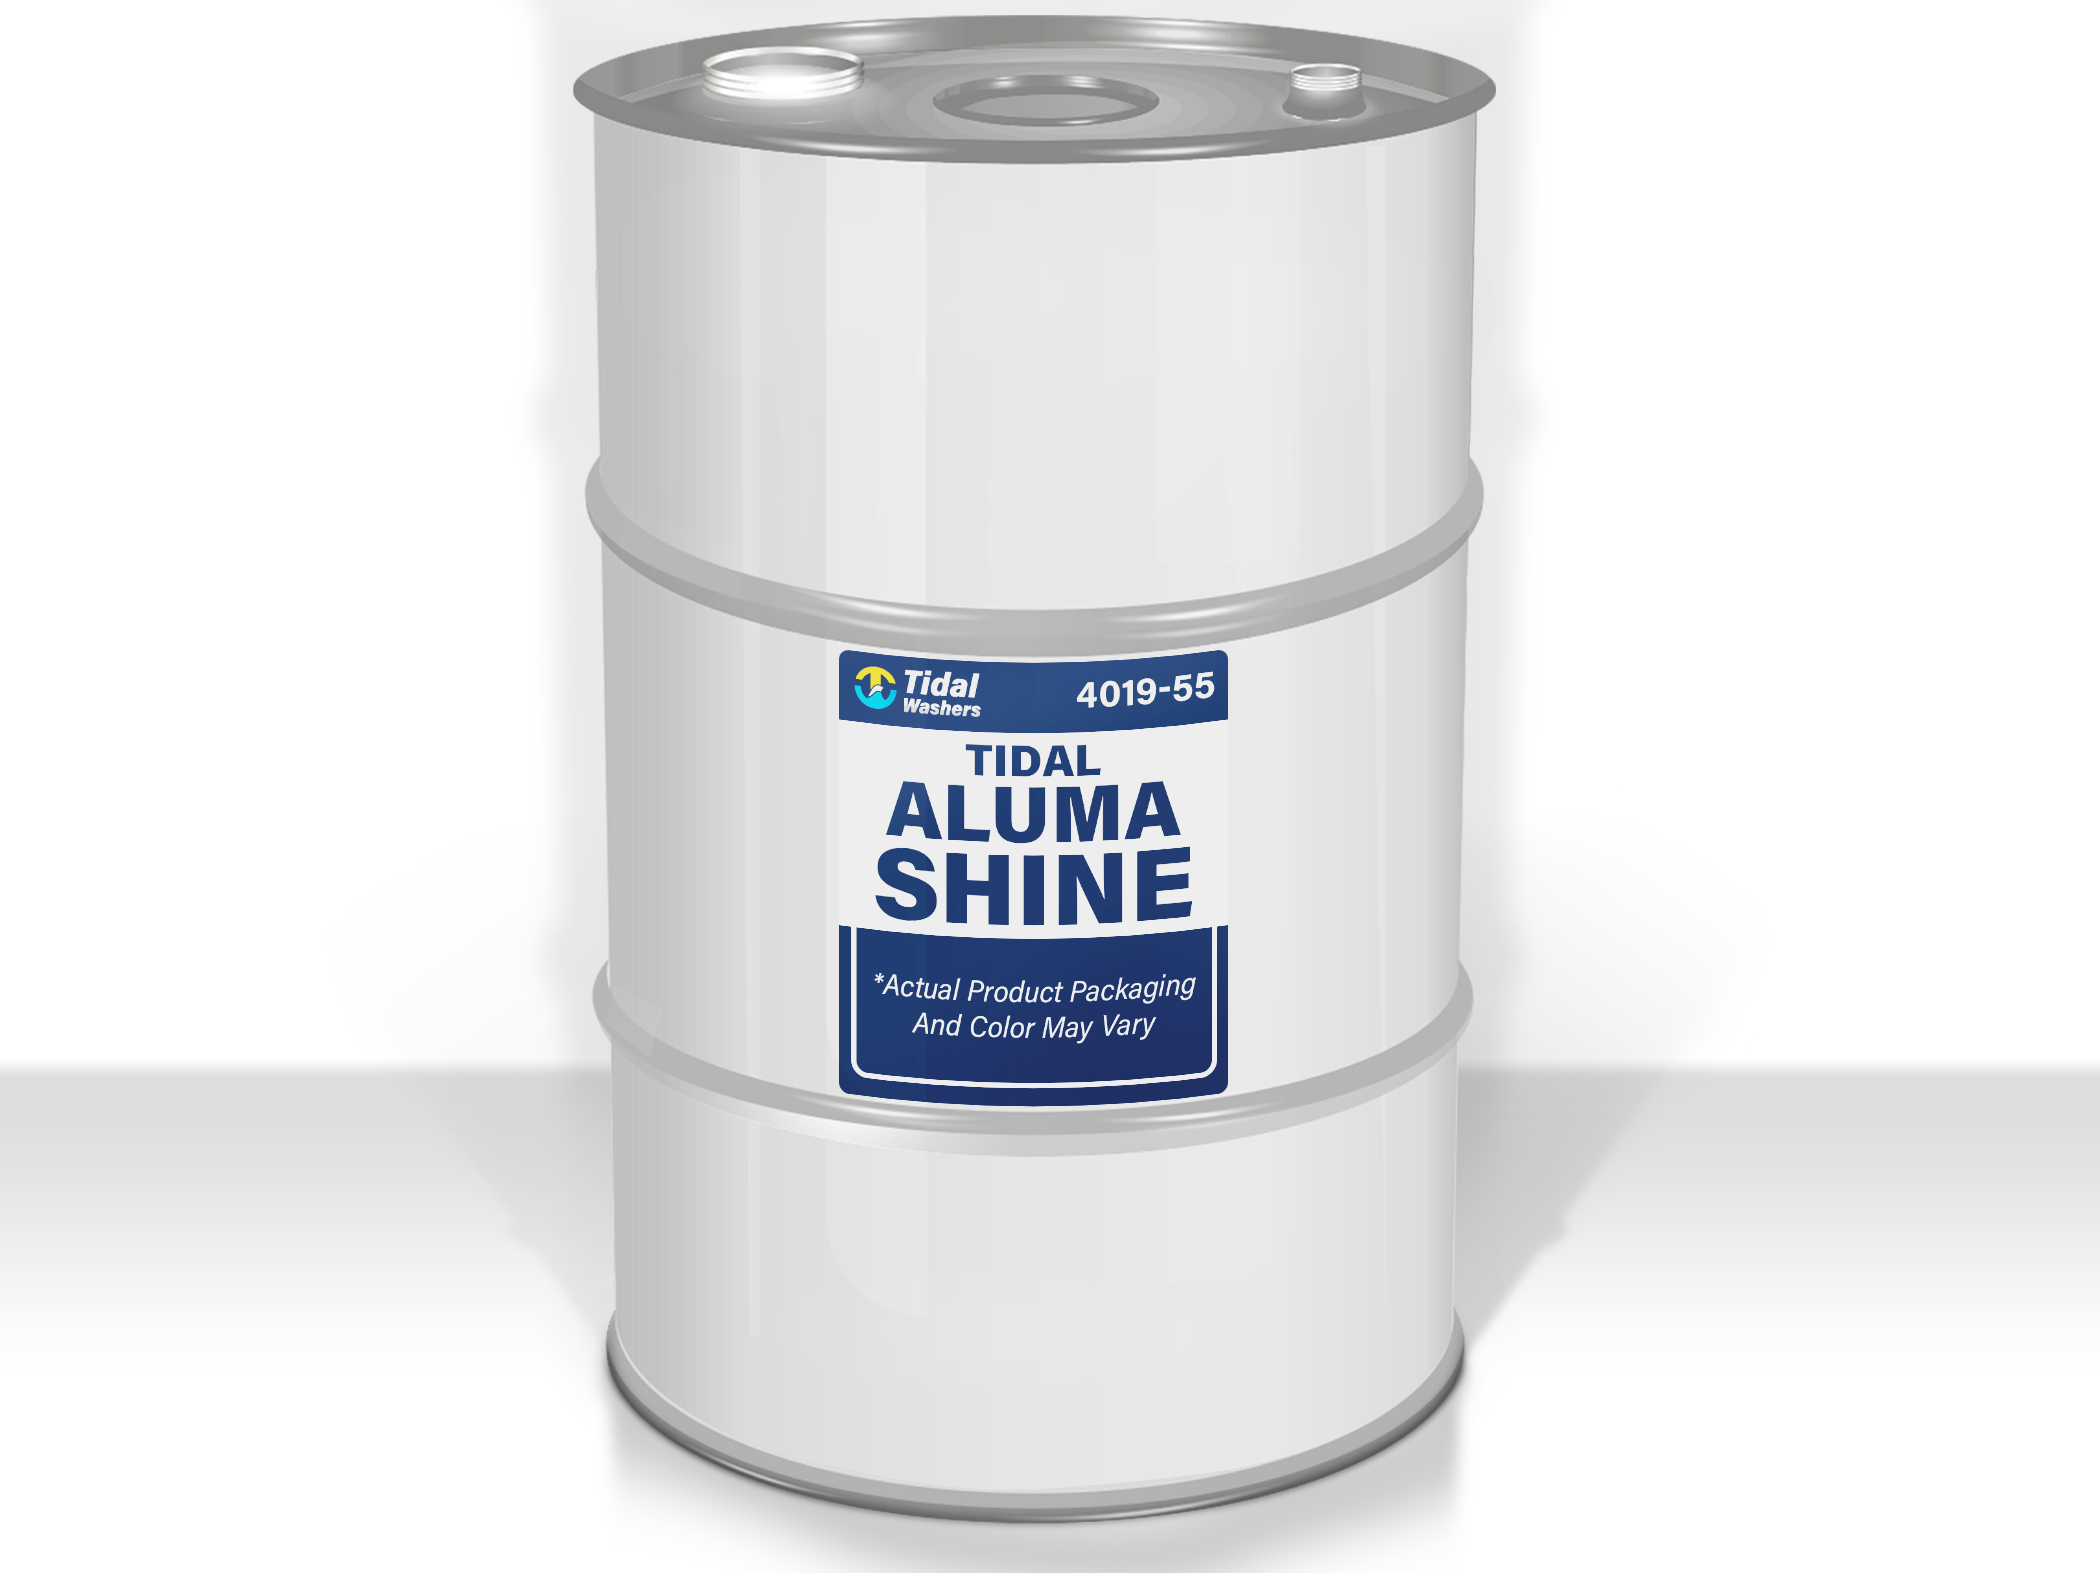 Aluminum Brightener 55-Gallon